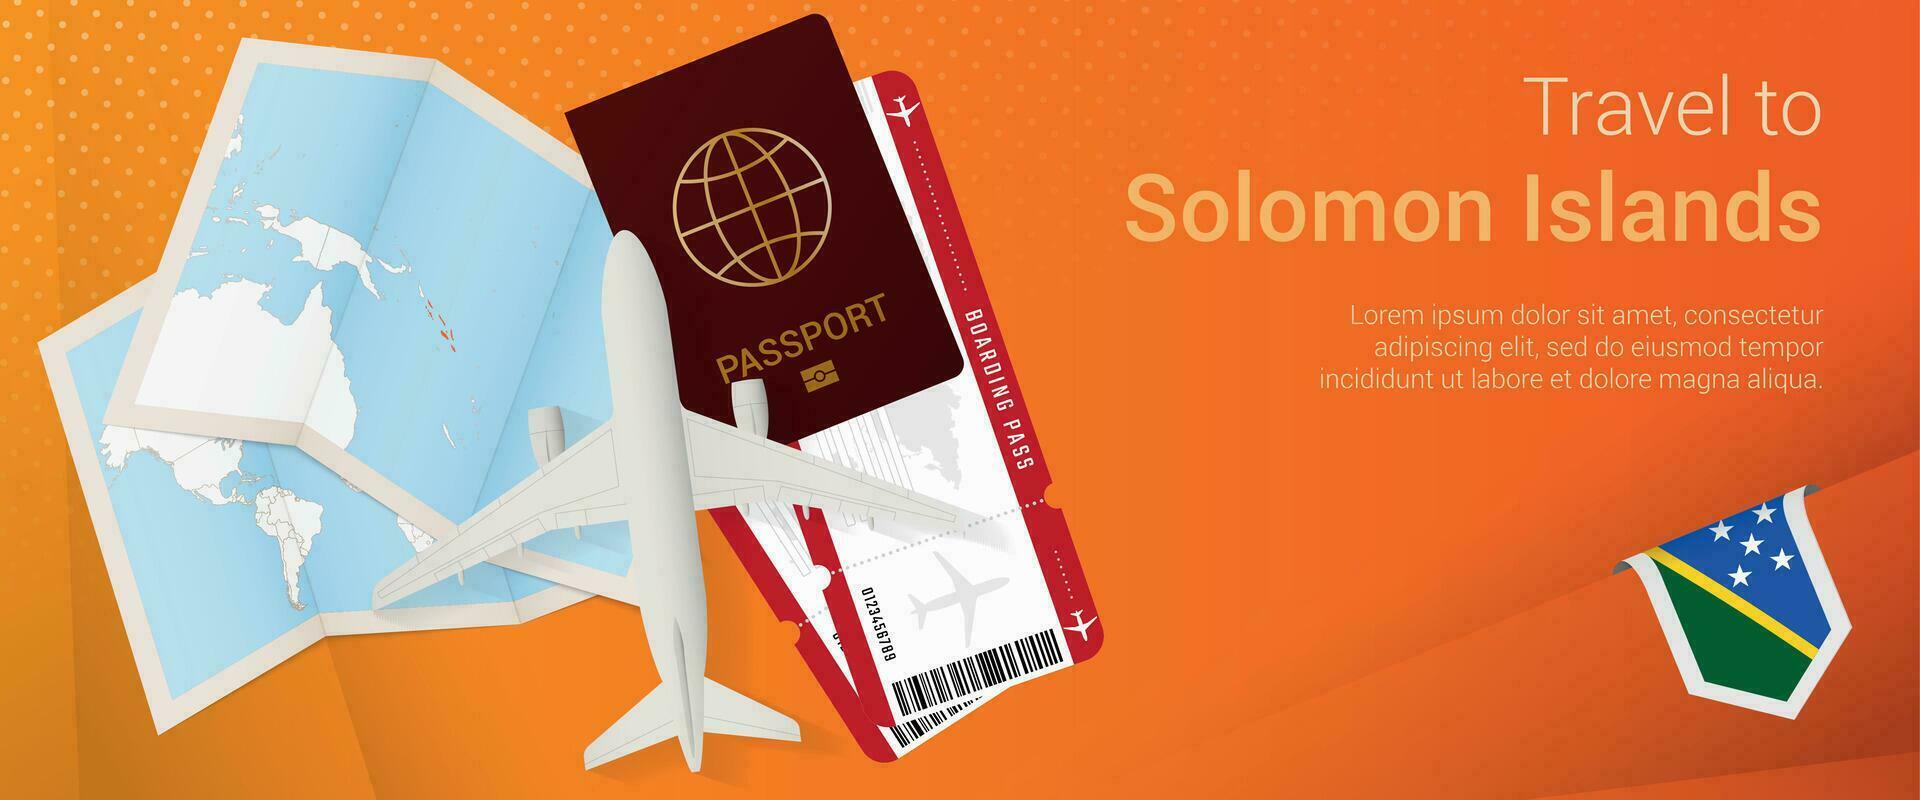 viaje a Salomón islas pop-under bandera. viaje bandera con pasaporte, Entradas, avión, embarque aprobar, mapa y bandera de Salomón islas vector